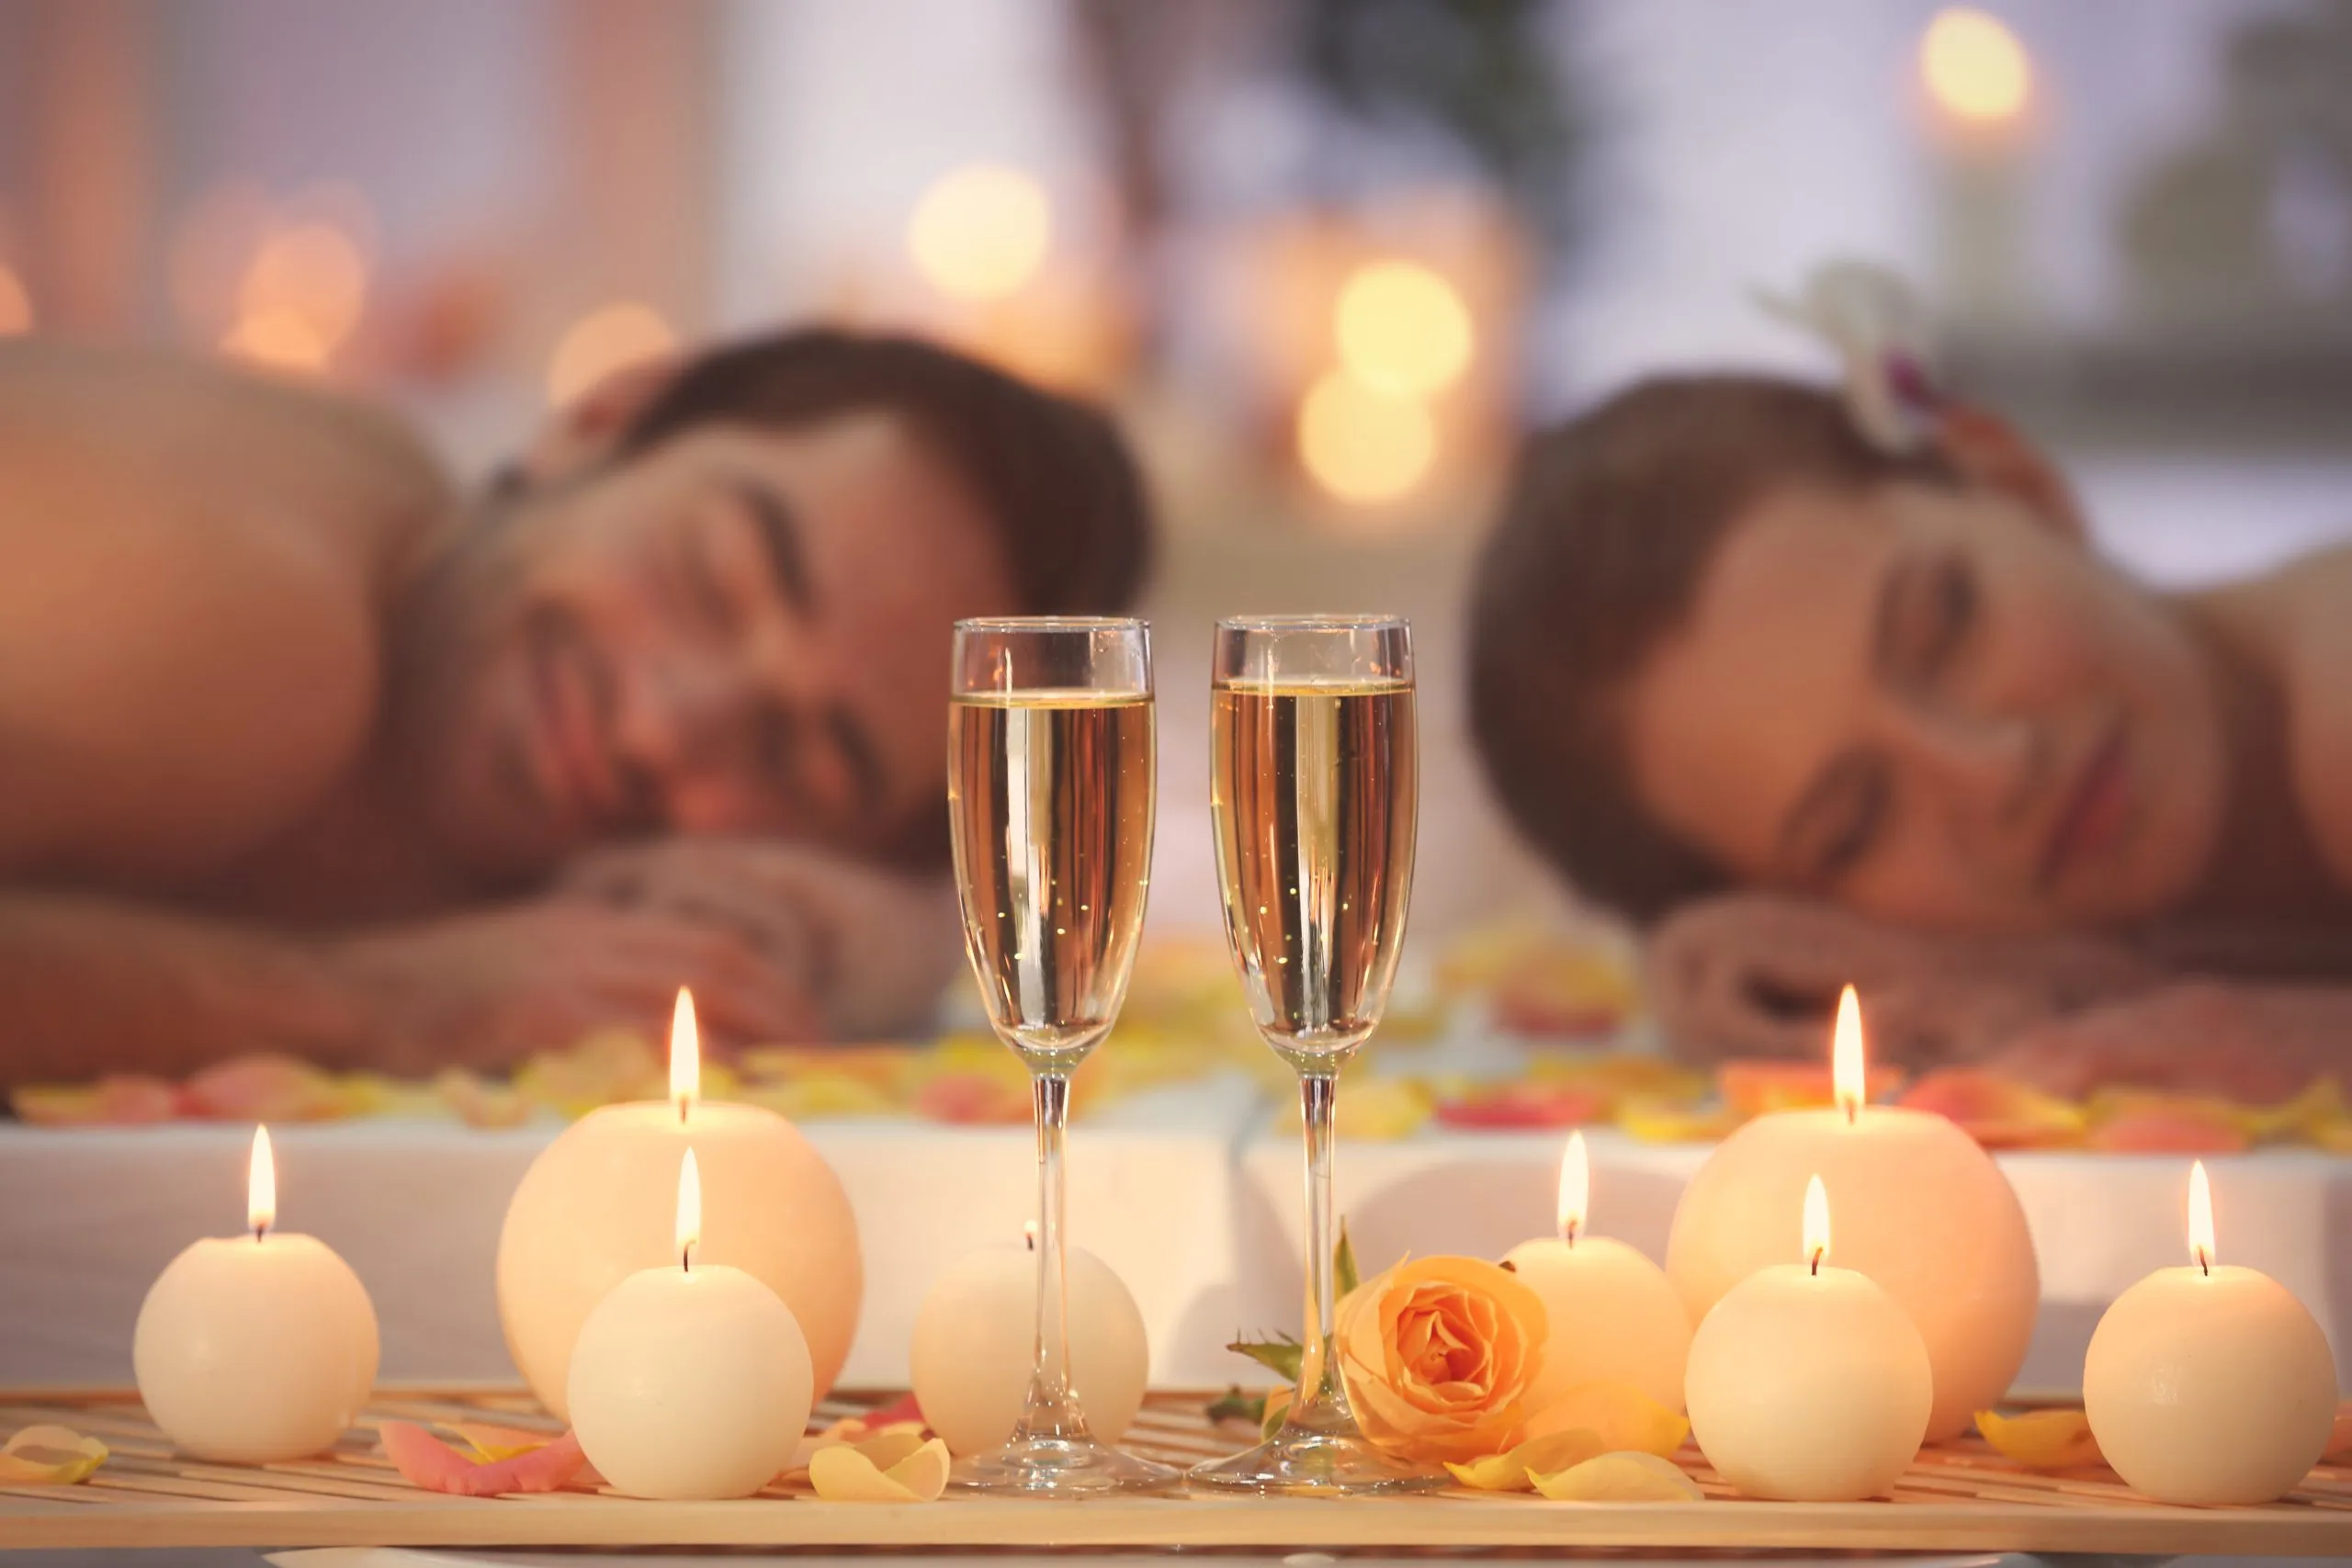 Bella composizione termale con bicchieri e coppia felice sullo sfondo